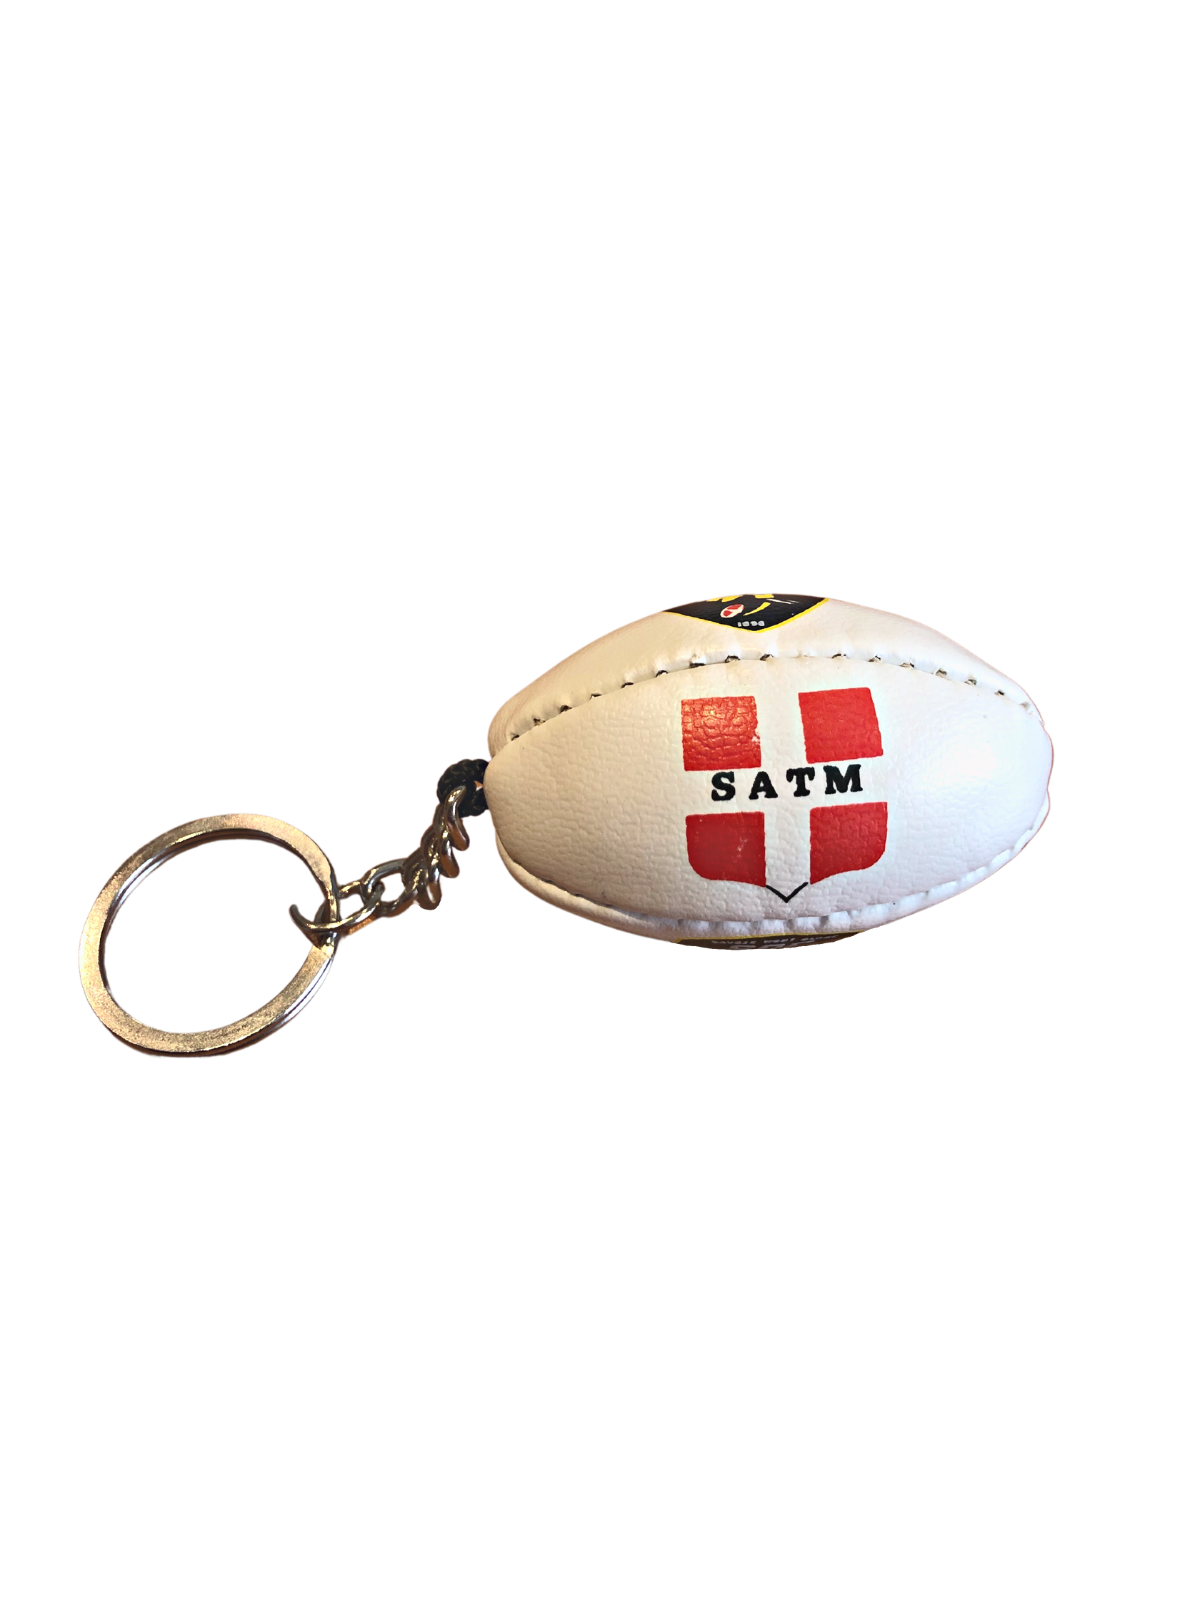 89-000 Porte-clés ballon de rugby publicitaire personnalisable personnalisé